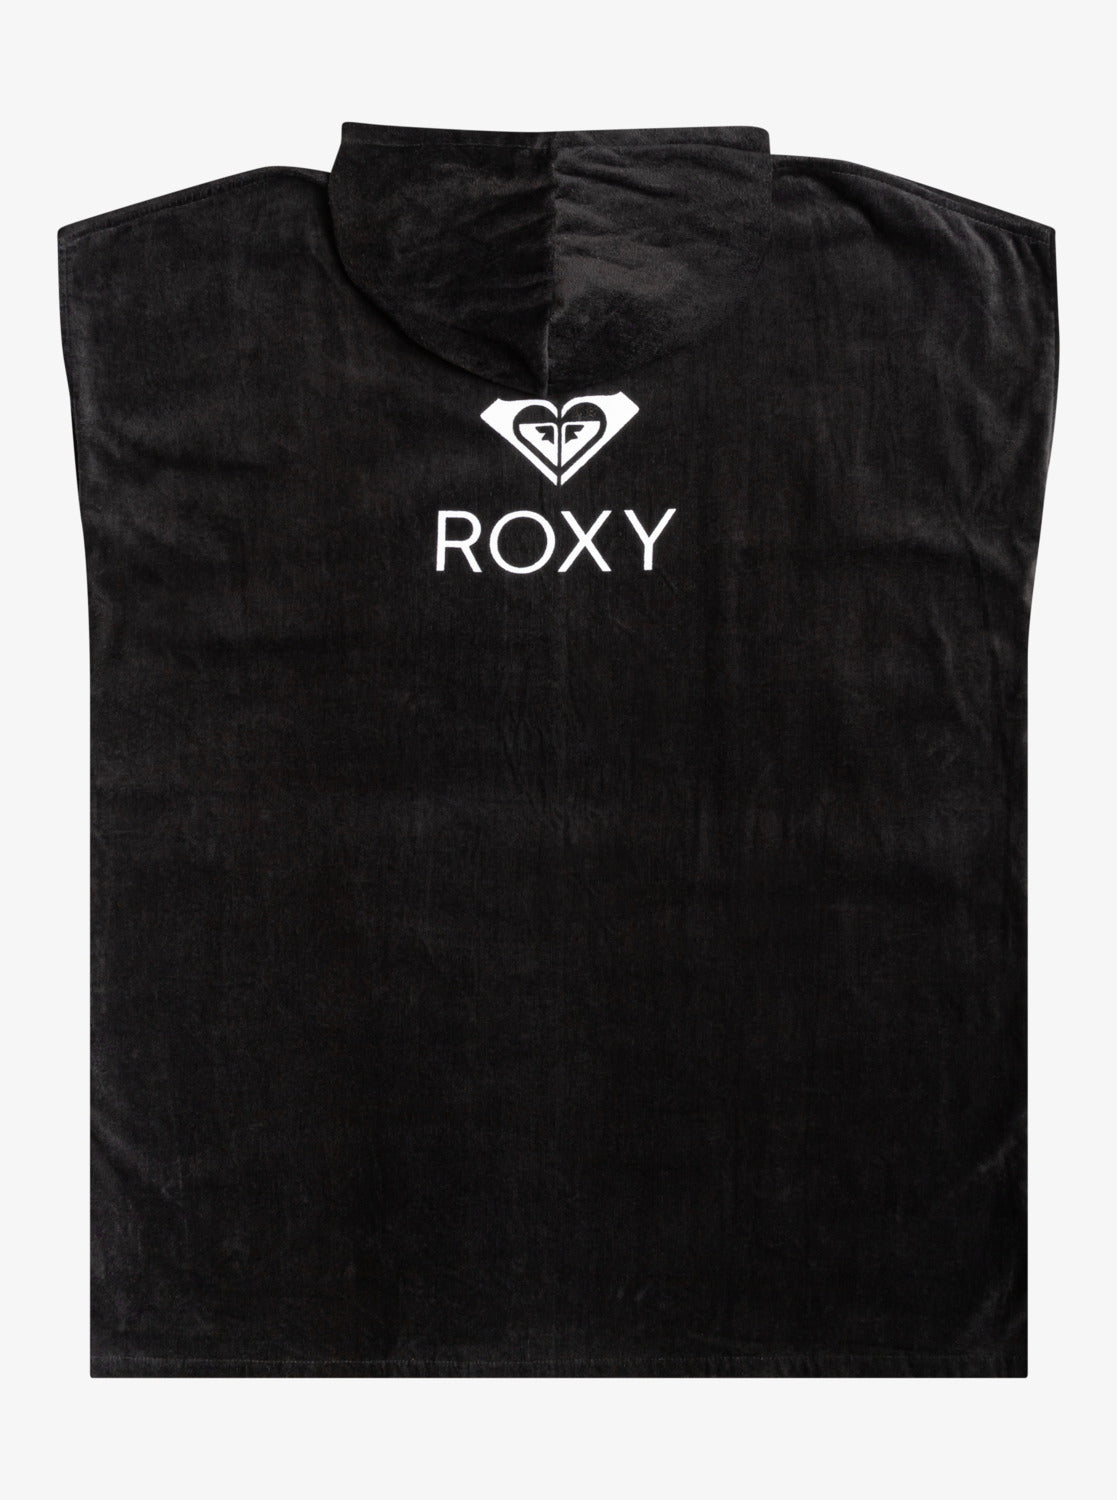 Roxy Sunny Joy Womens Hooded Towel in black back